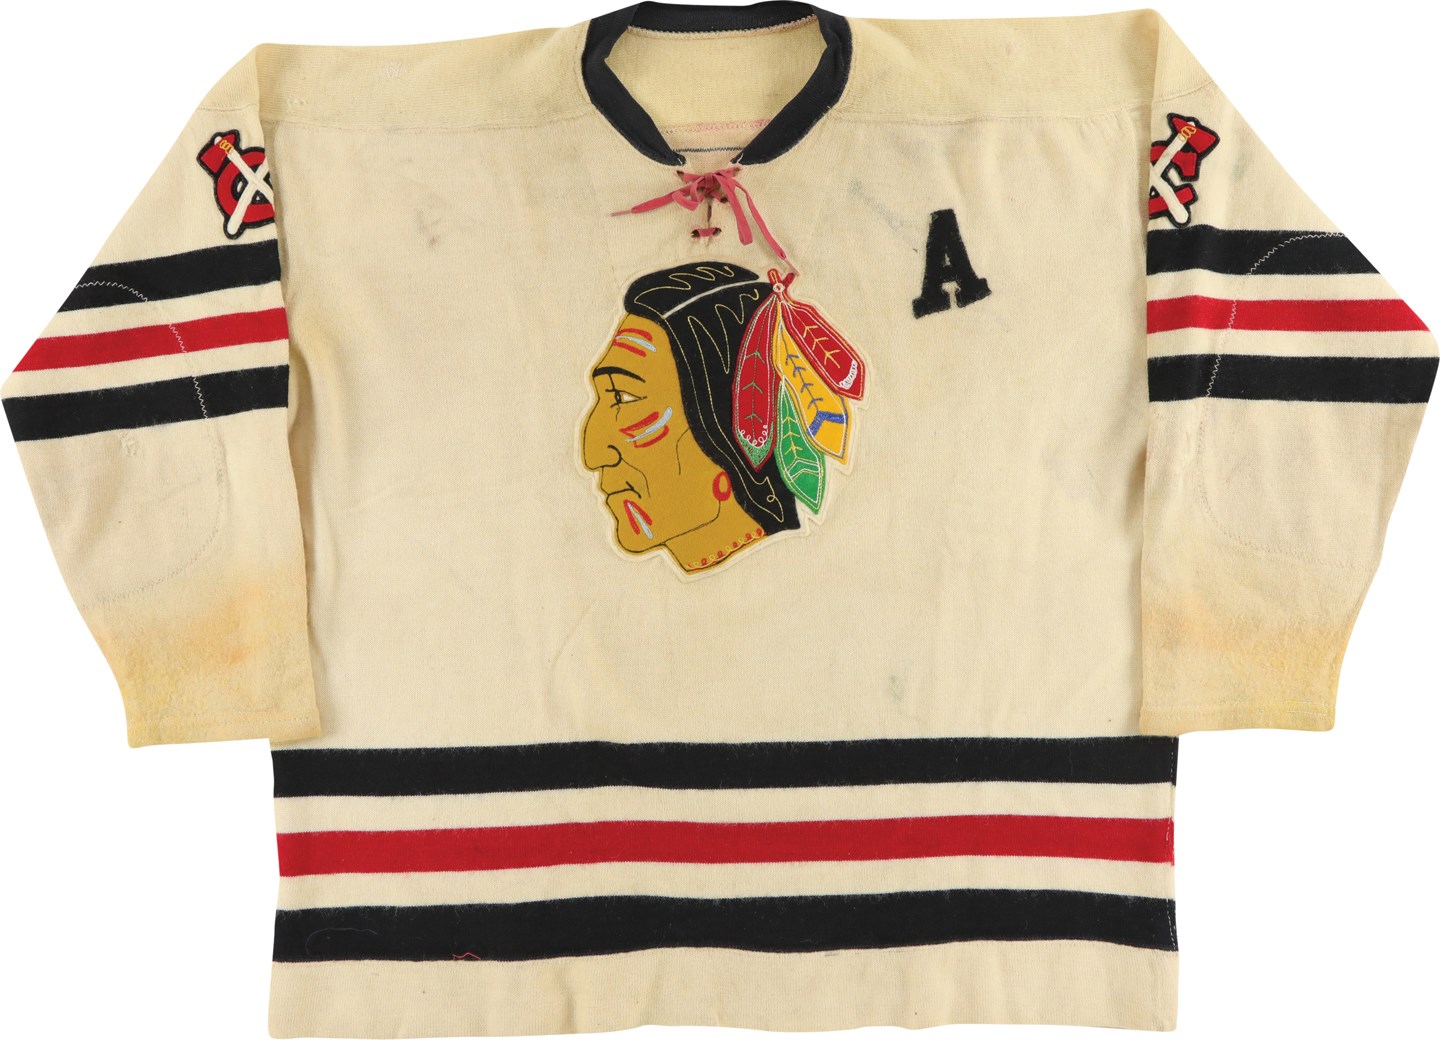 Hockey - Rare 1955-56 Harry Watson Chicago Blackhawks Game Worn Jersey